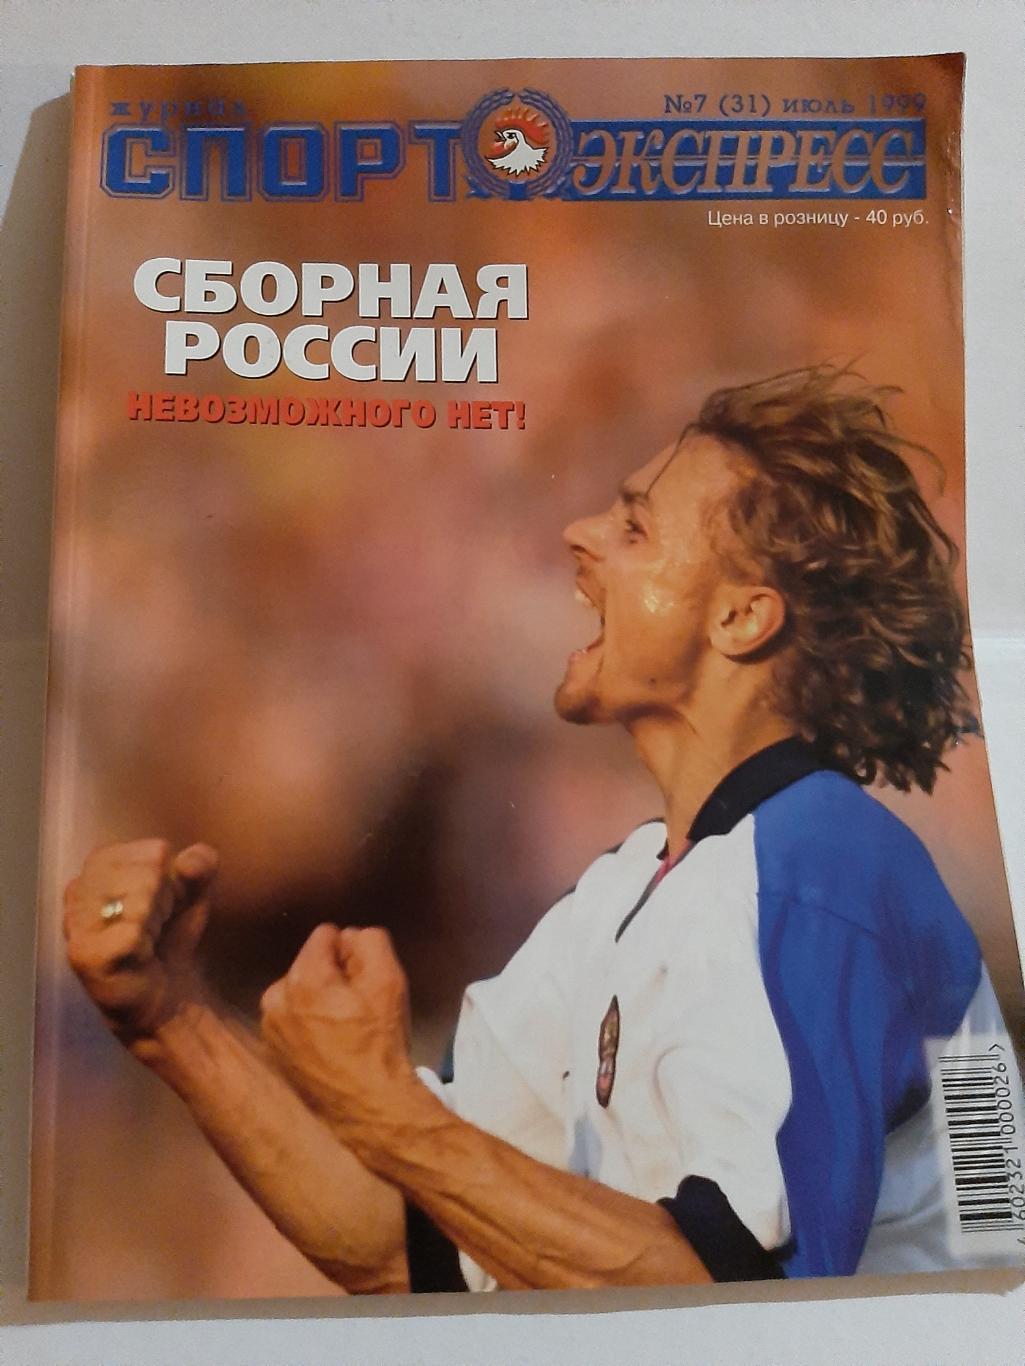 Журнал Спорт Экспресс № 7 (31) 1999